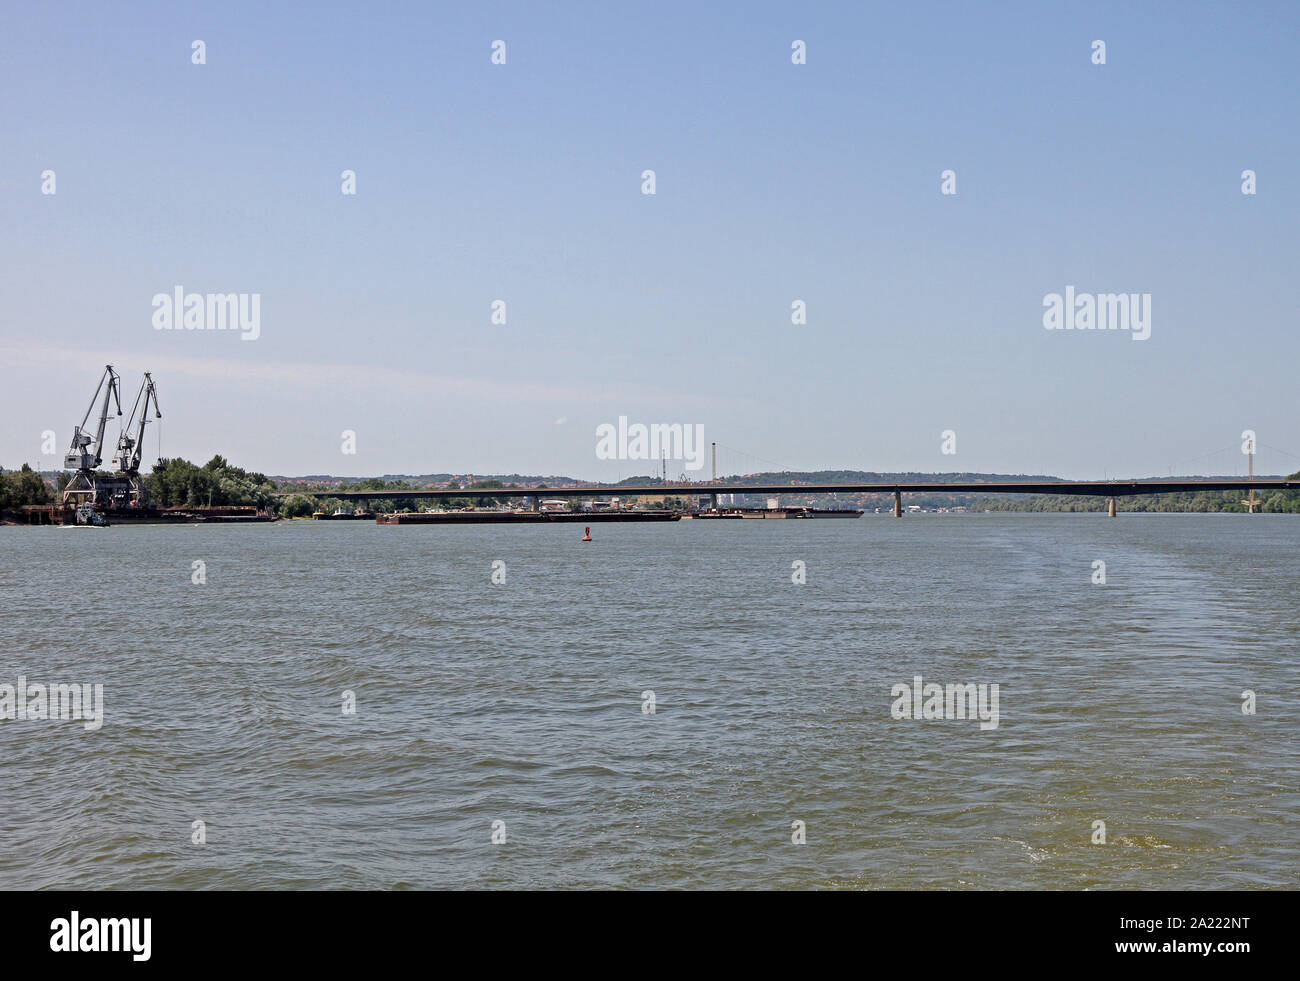 Les grues de chargement sur les quais de chargement sur le Danube, à côté de pont 14, Kovin, Serbie. Banque D'Images